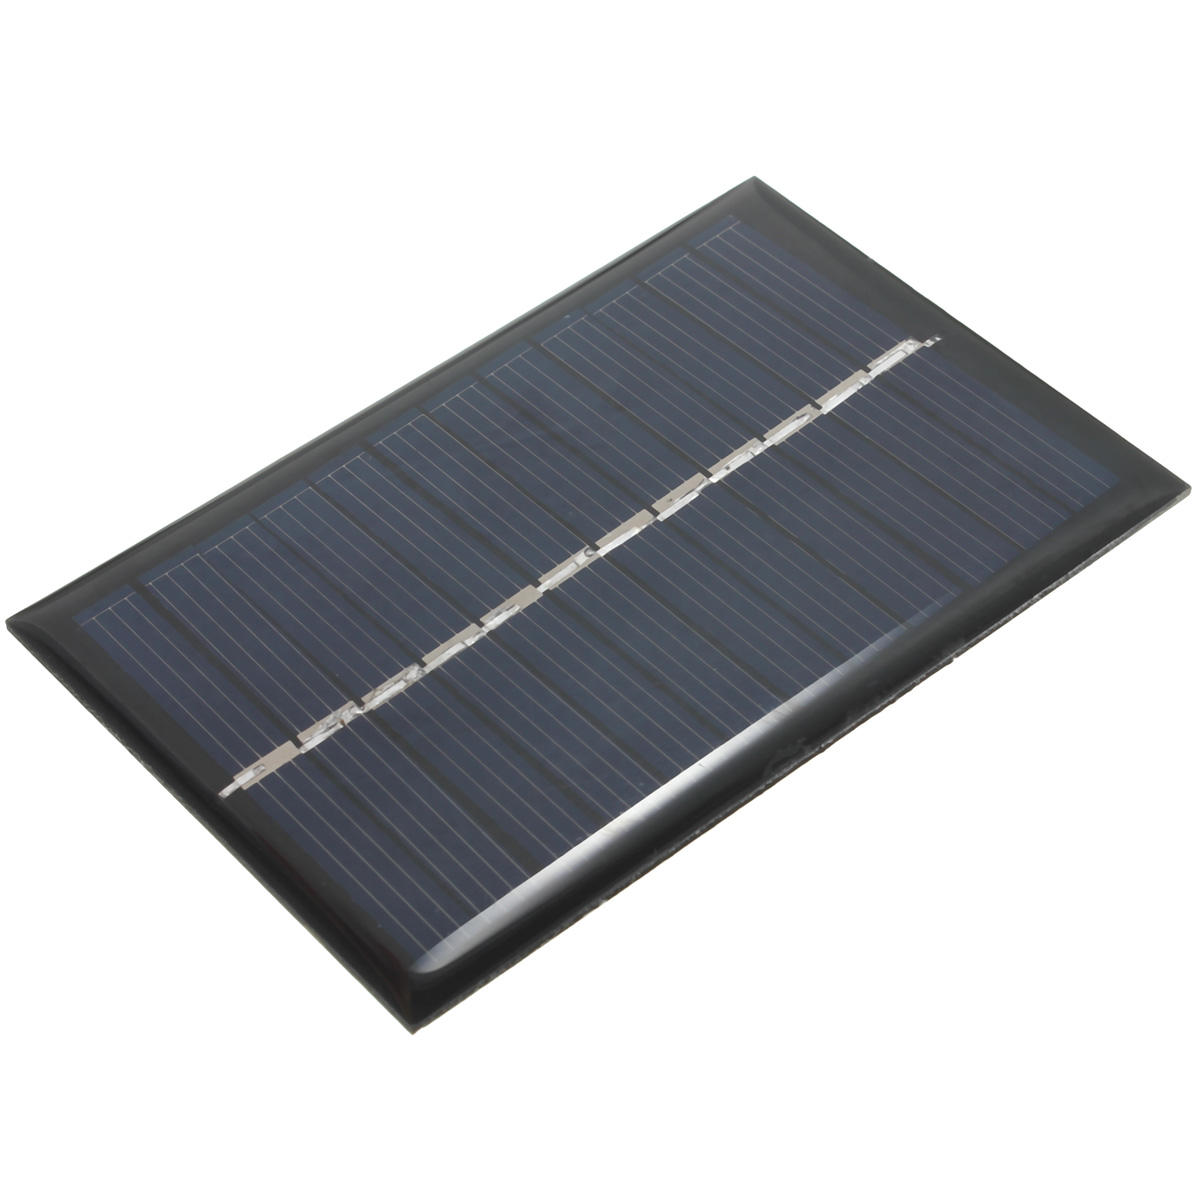 

6PCS 6V 100mA 0.6W Поликристаллическая мини-эпоксидная фотоэлектрическая панель Солнечная